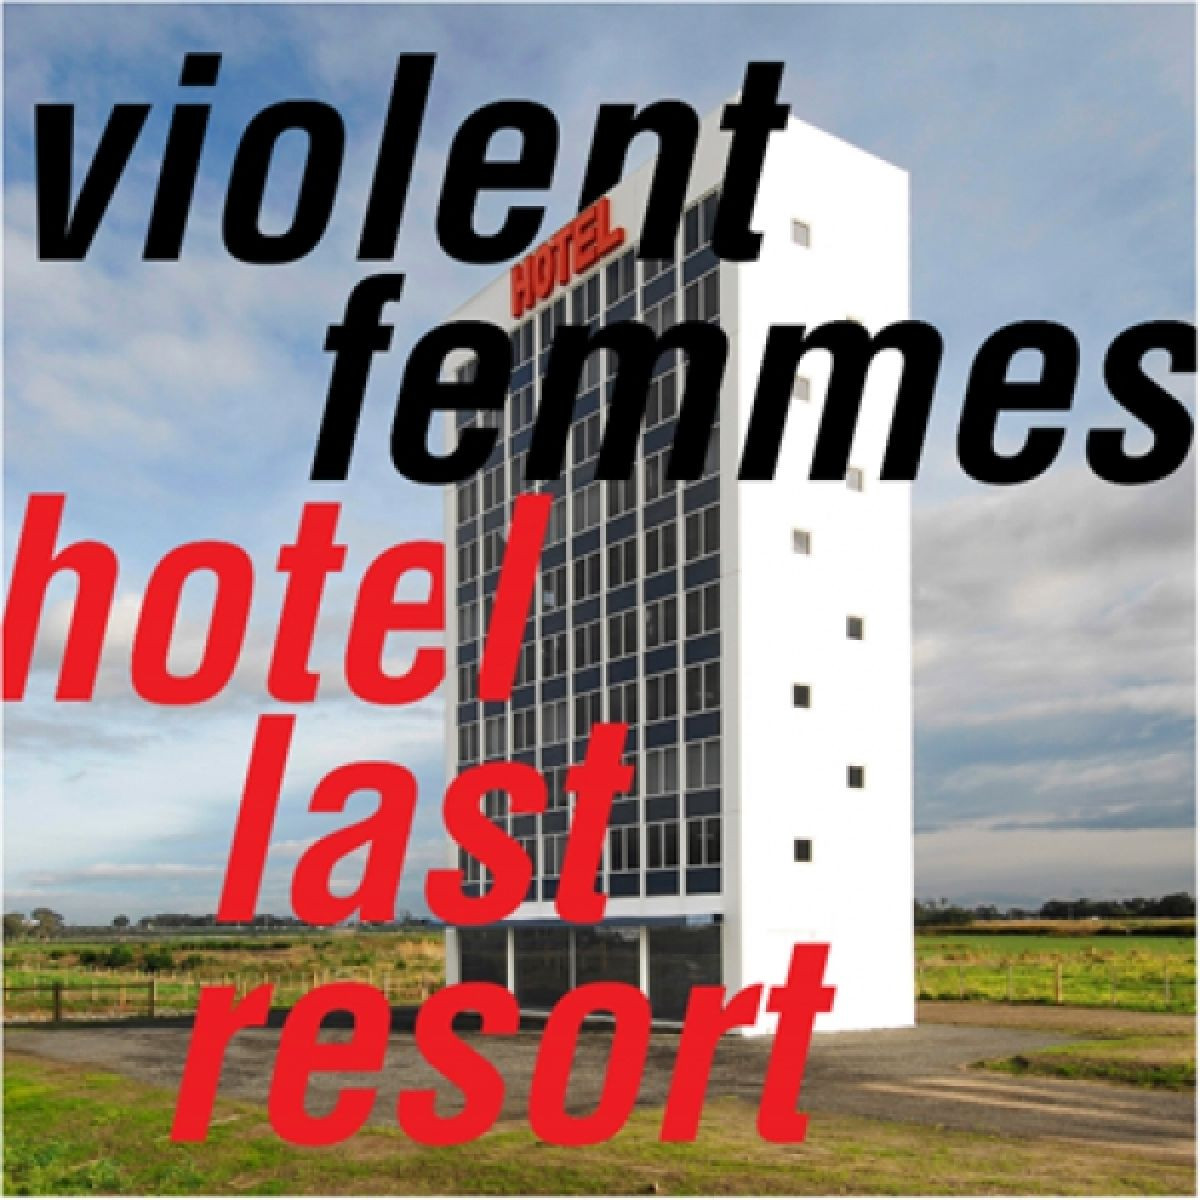 violent femmes hotel last resort 03.jpg